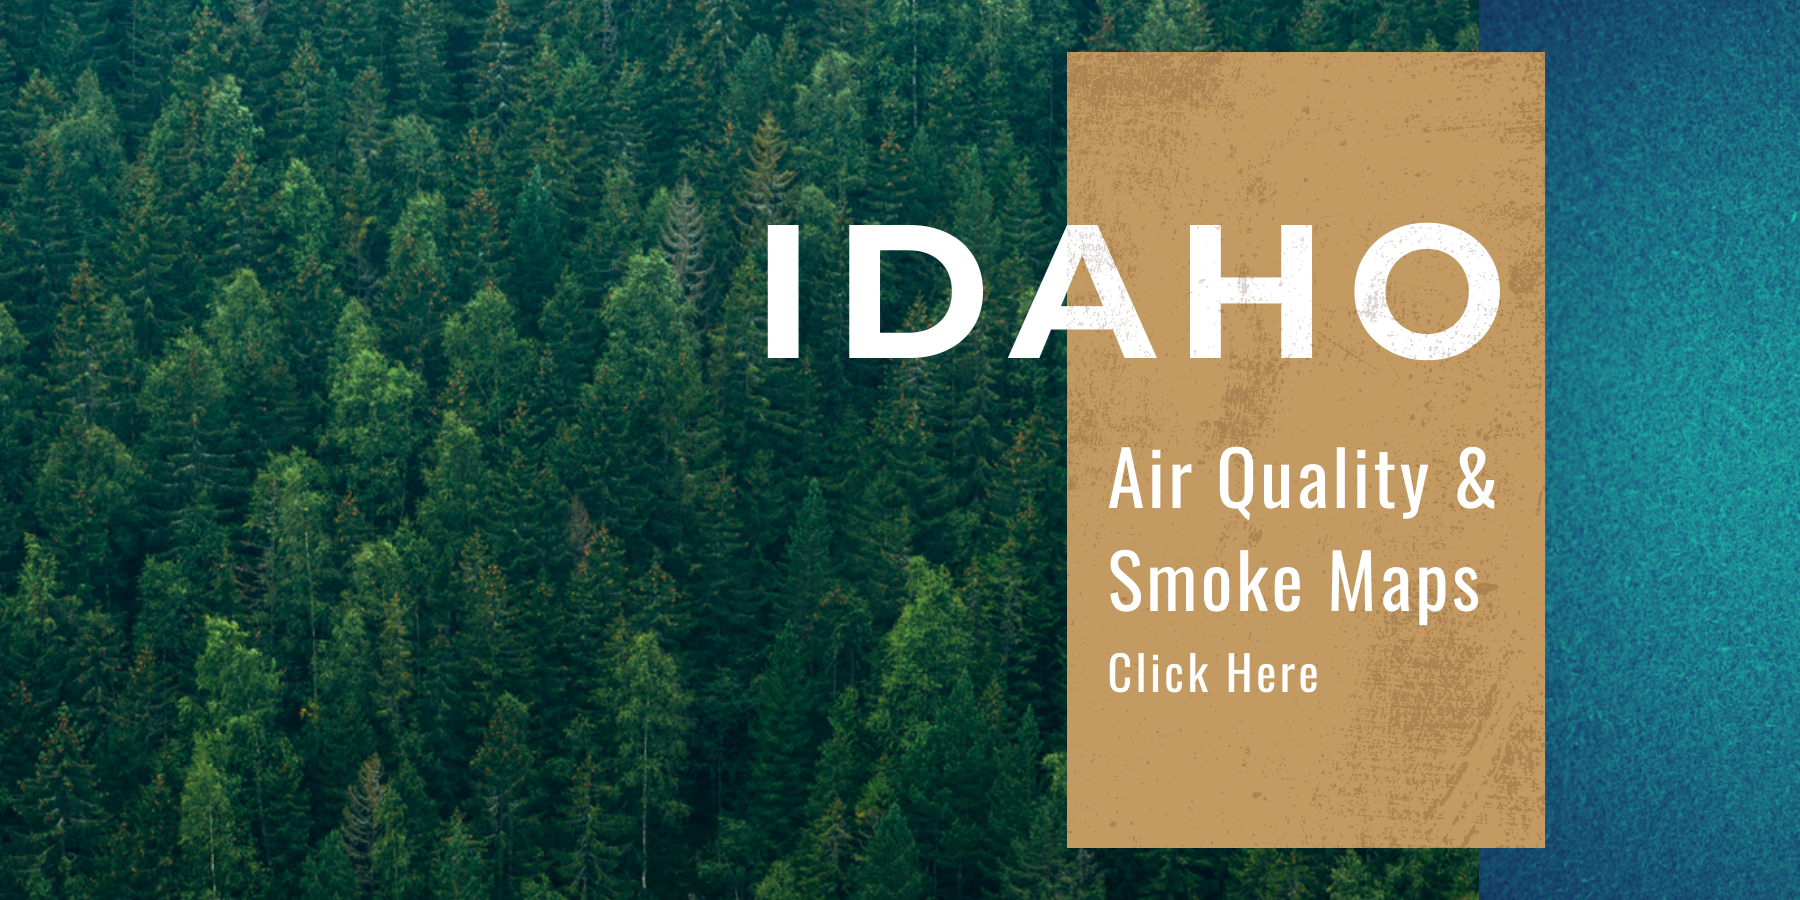 Slide linking to Idaho Smoke Maps